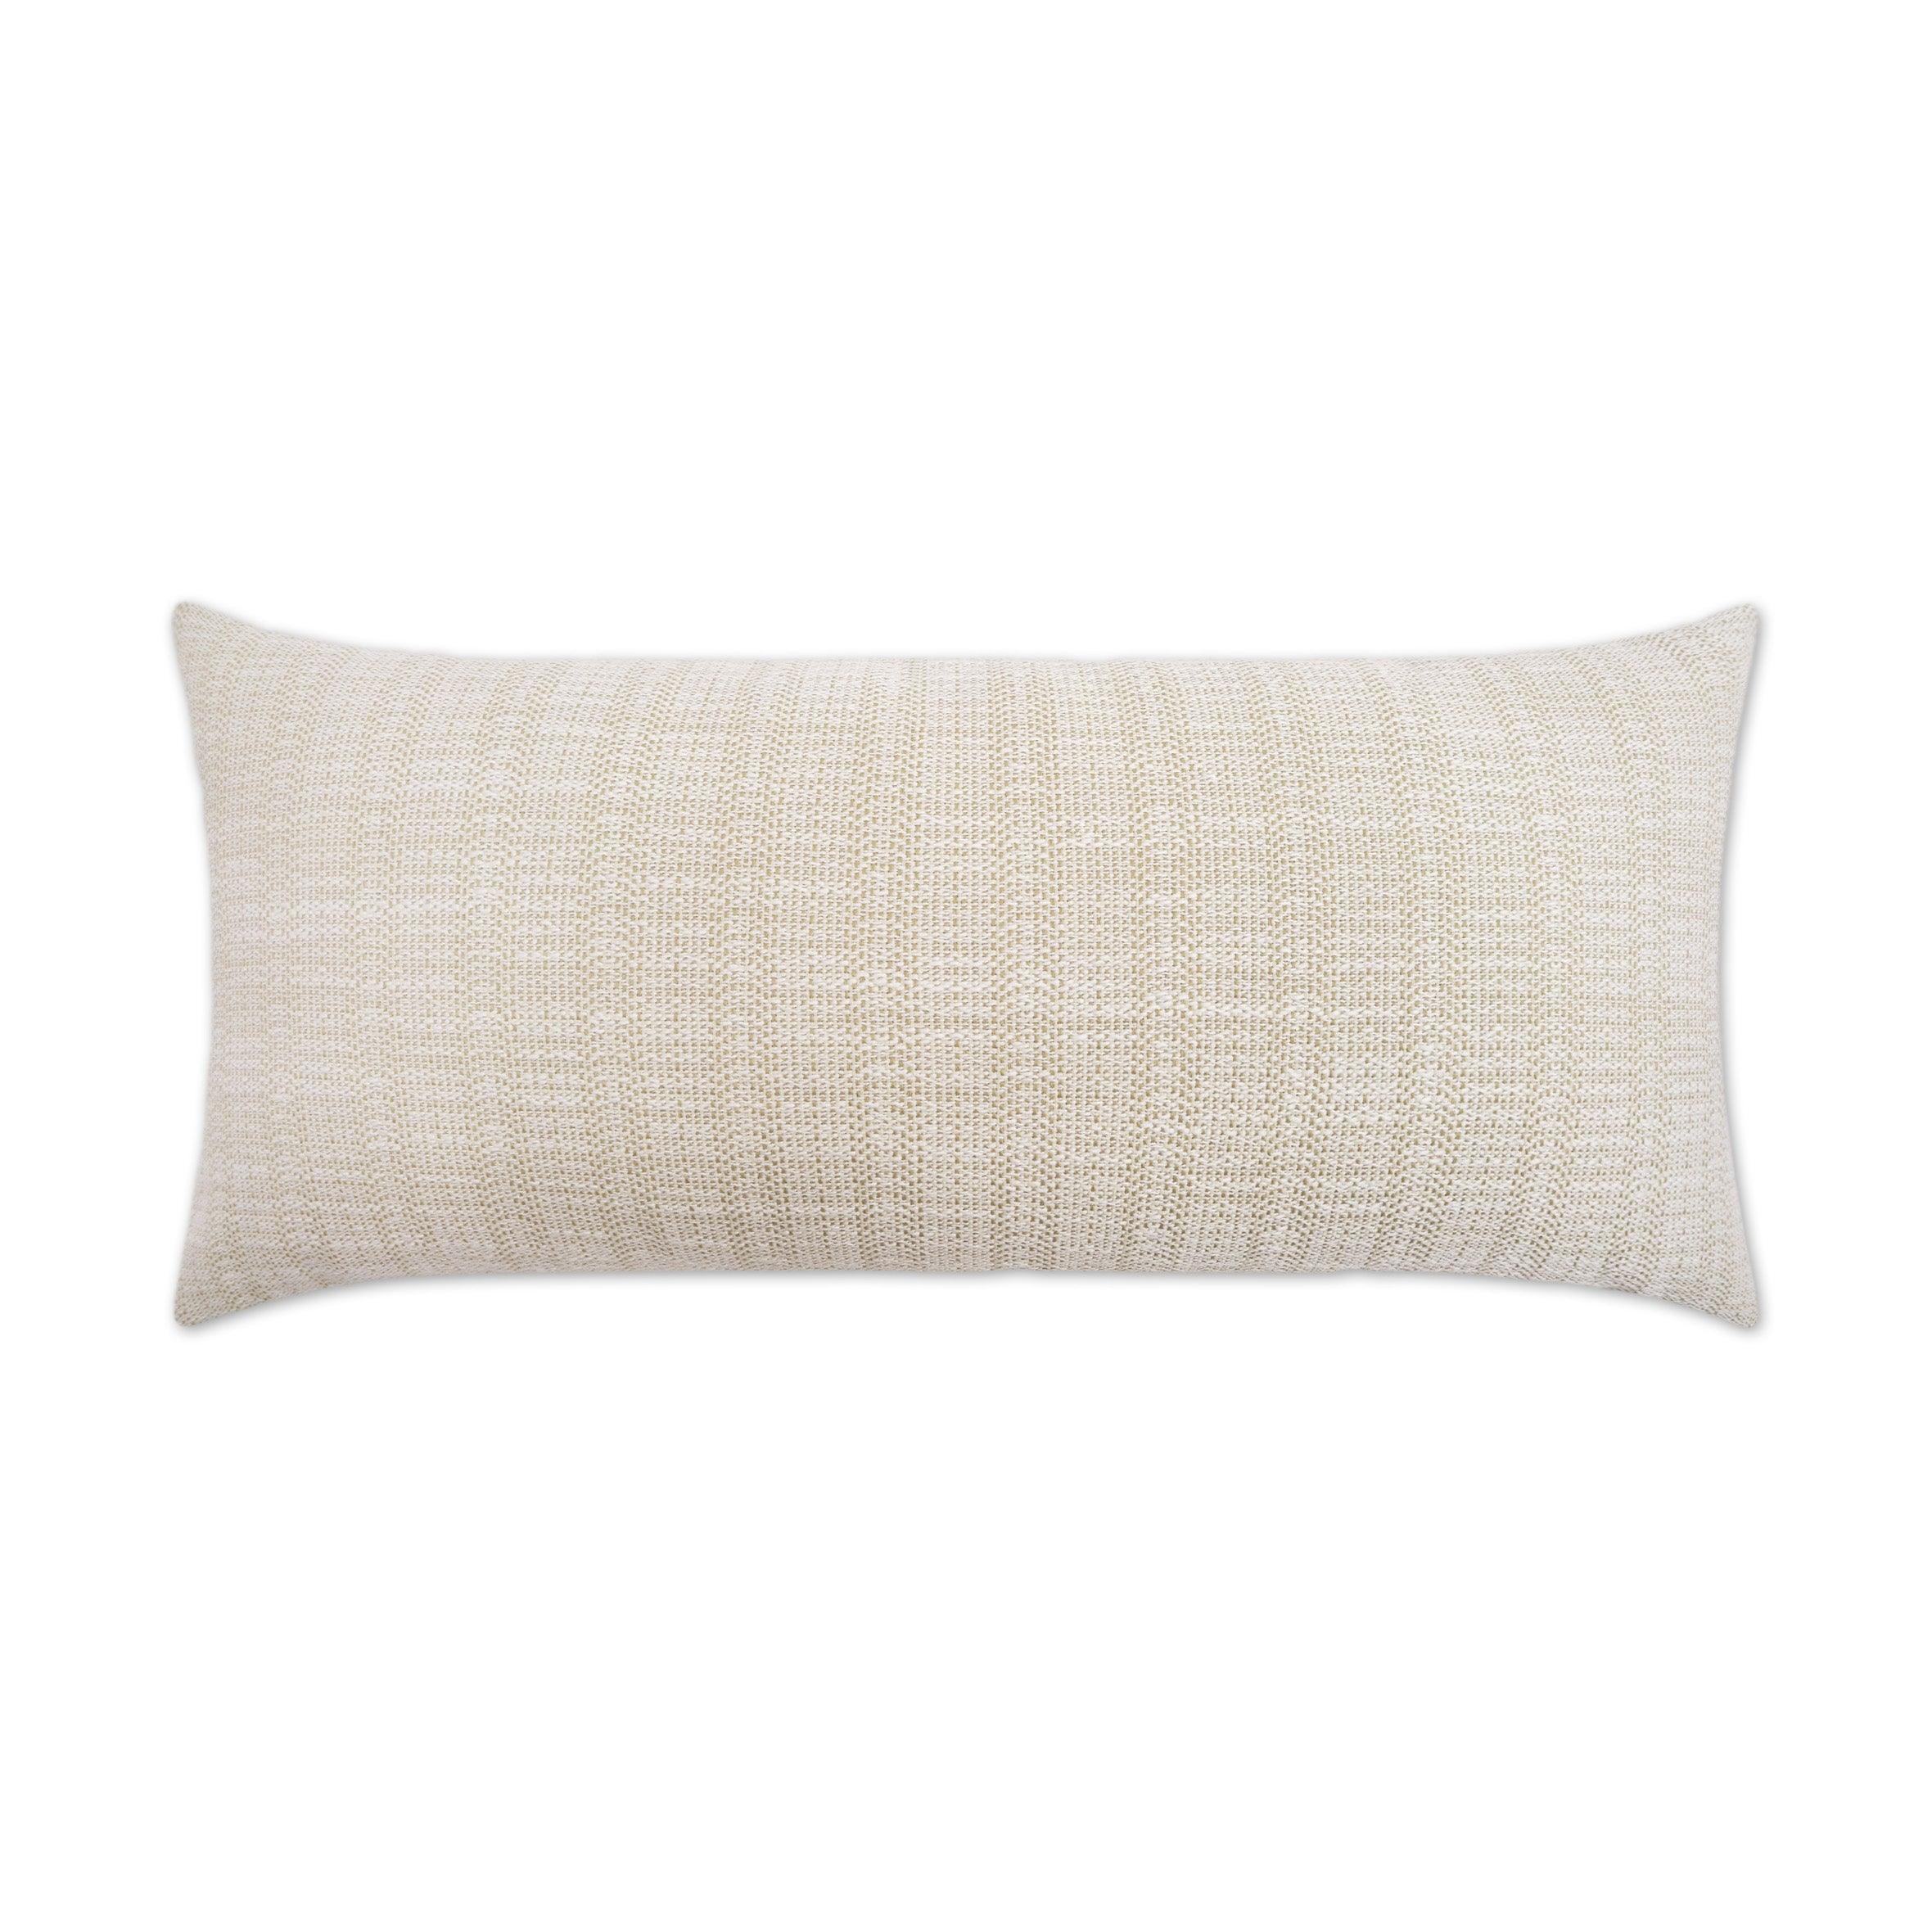 LOOMLAN Outdoor - Outdoor Ashmolton Lumbar Pillow - Linen - Outdoor Pillows